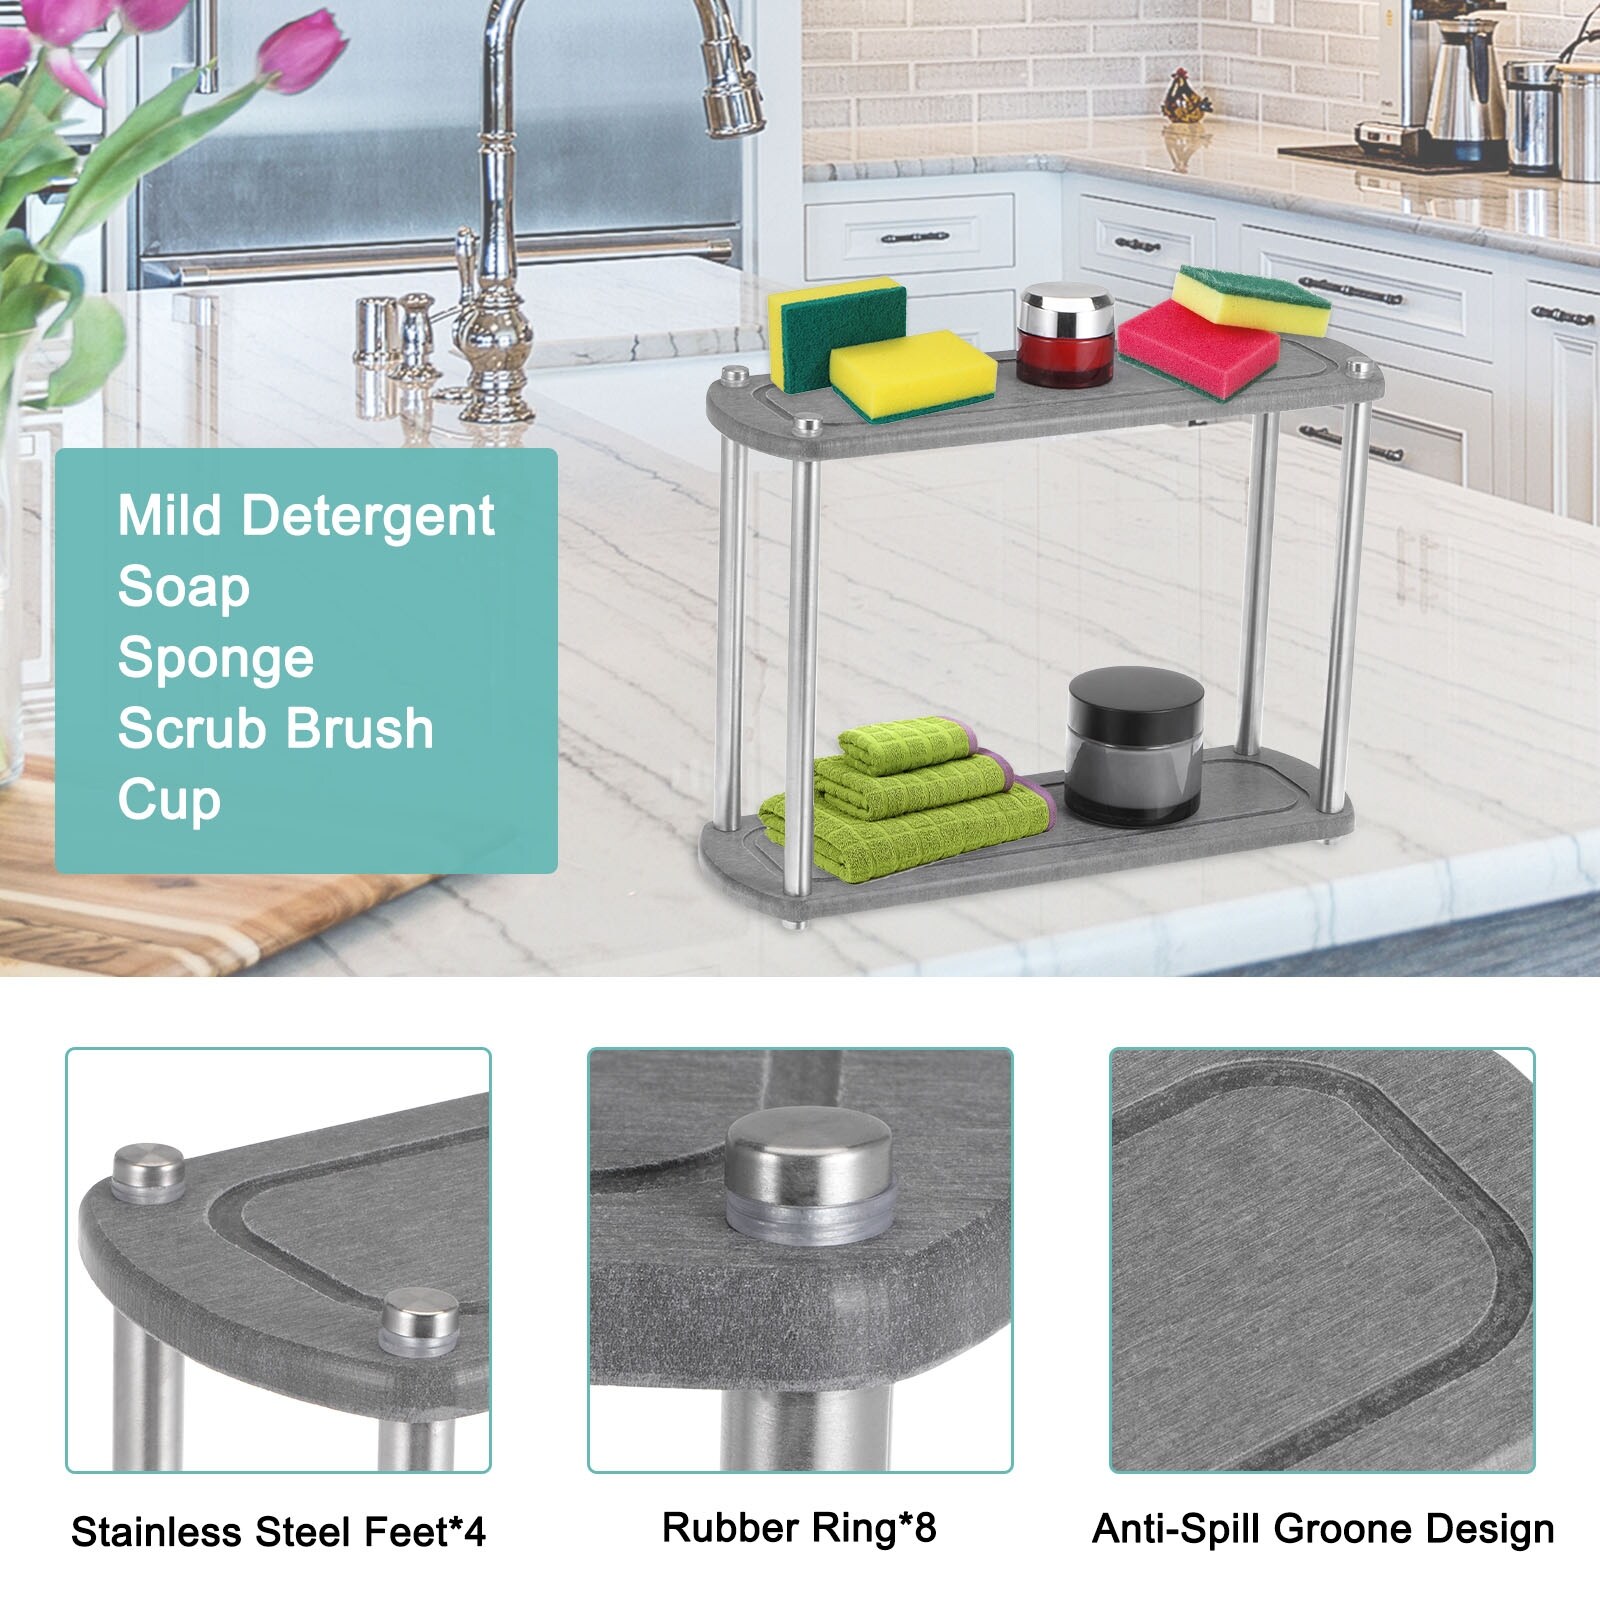 Unique Bargains Instant Dry Sink Organizer, 11.8 inch Kitchen Sink Caddy Sponge Holder Dark Grey